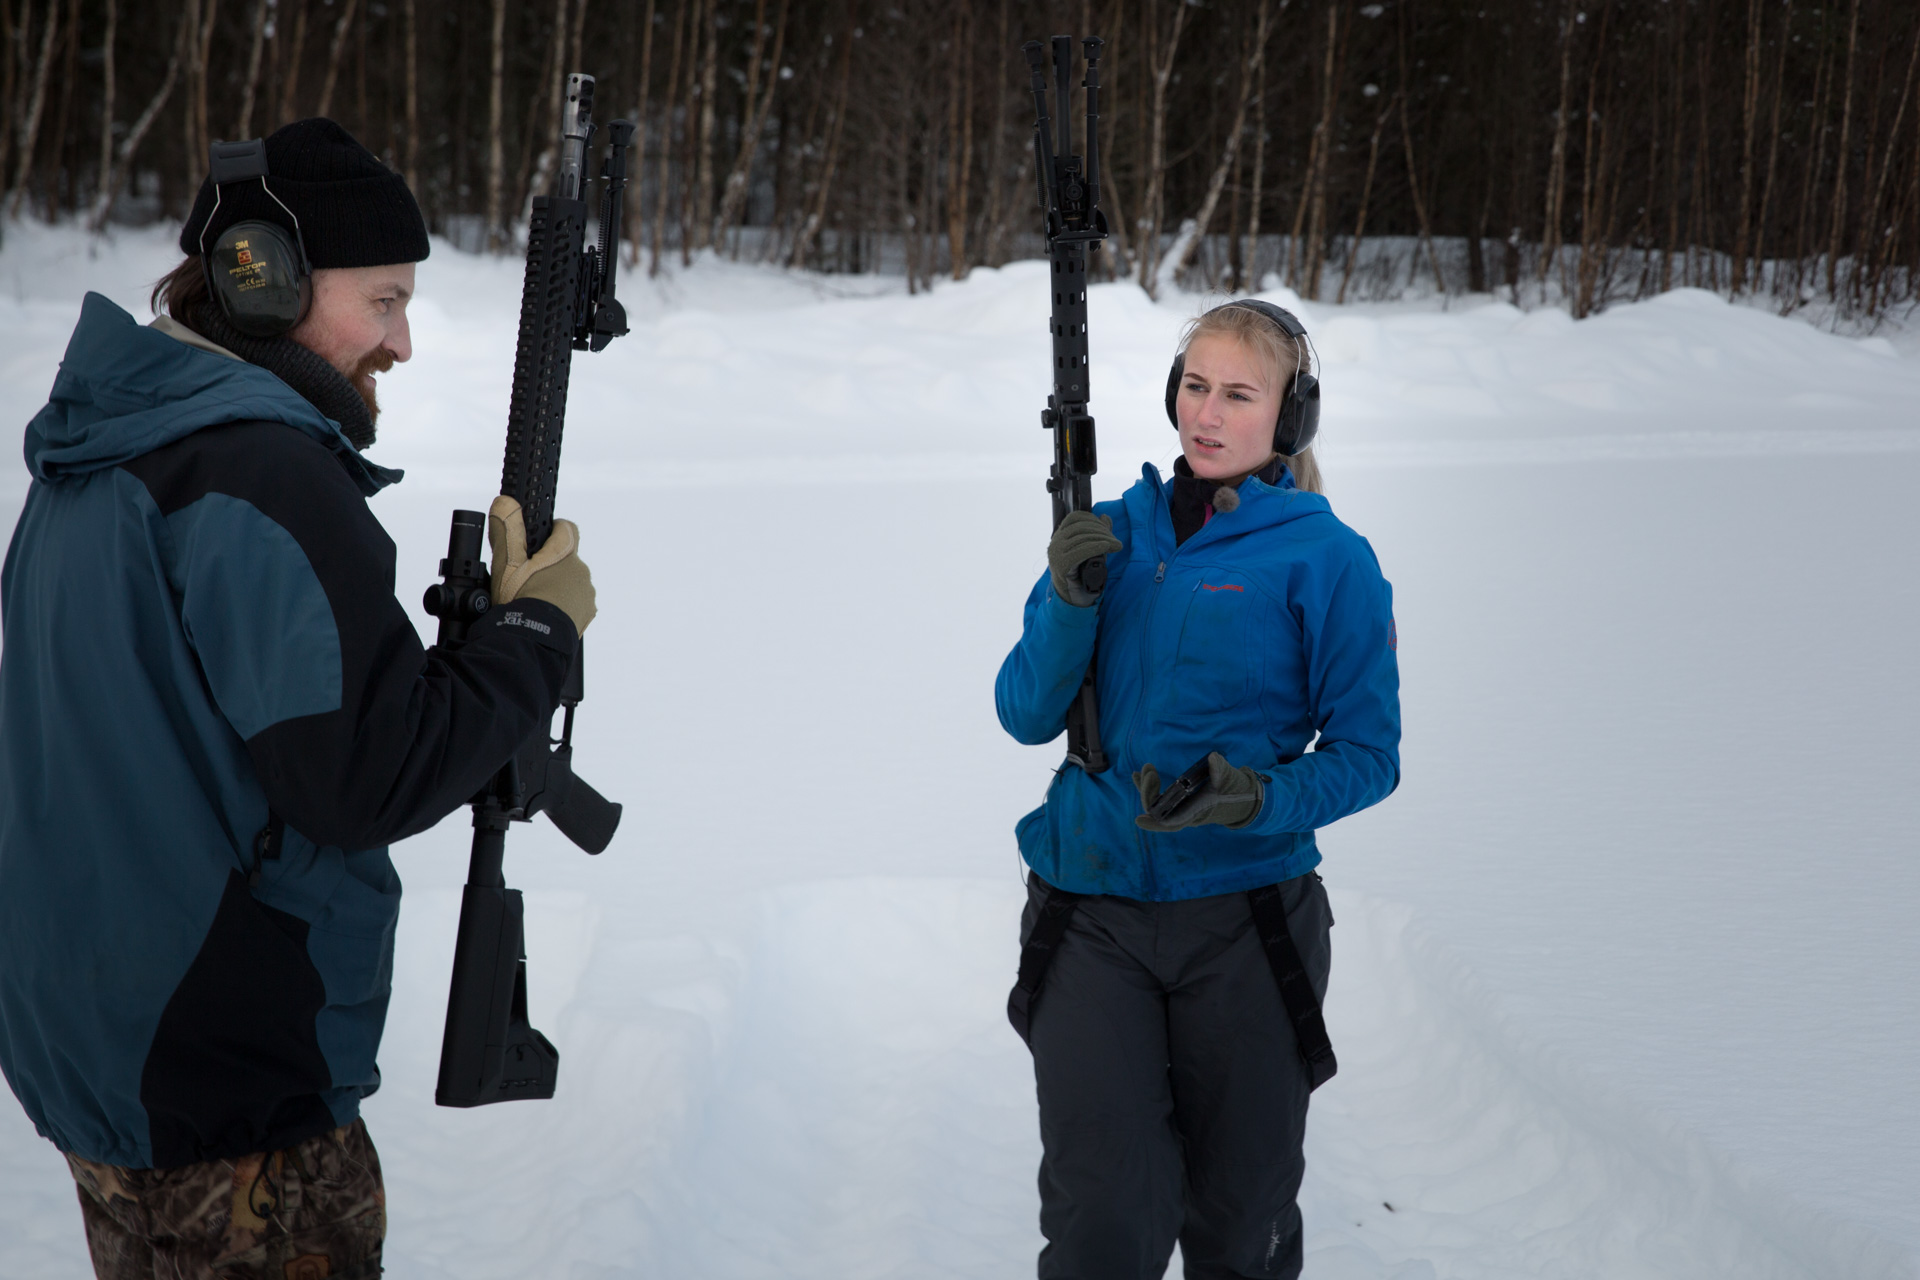 Ola Skårild er med og hjelper datteren Emilie Skårild (17) på skytetrening. Disse våpnene står i fare for å bli ulovlige i Norge. (Foto: Ludvig Løkholm Lewin, NRK)